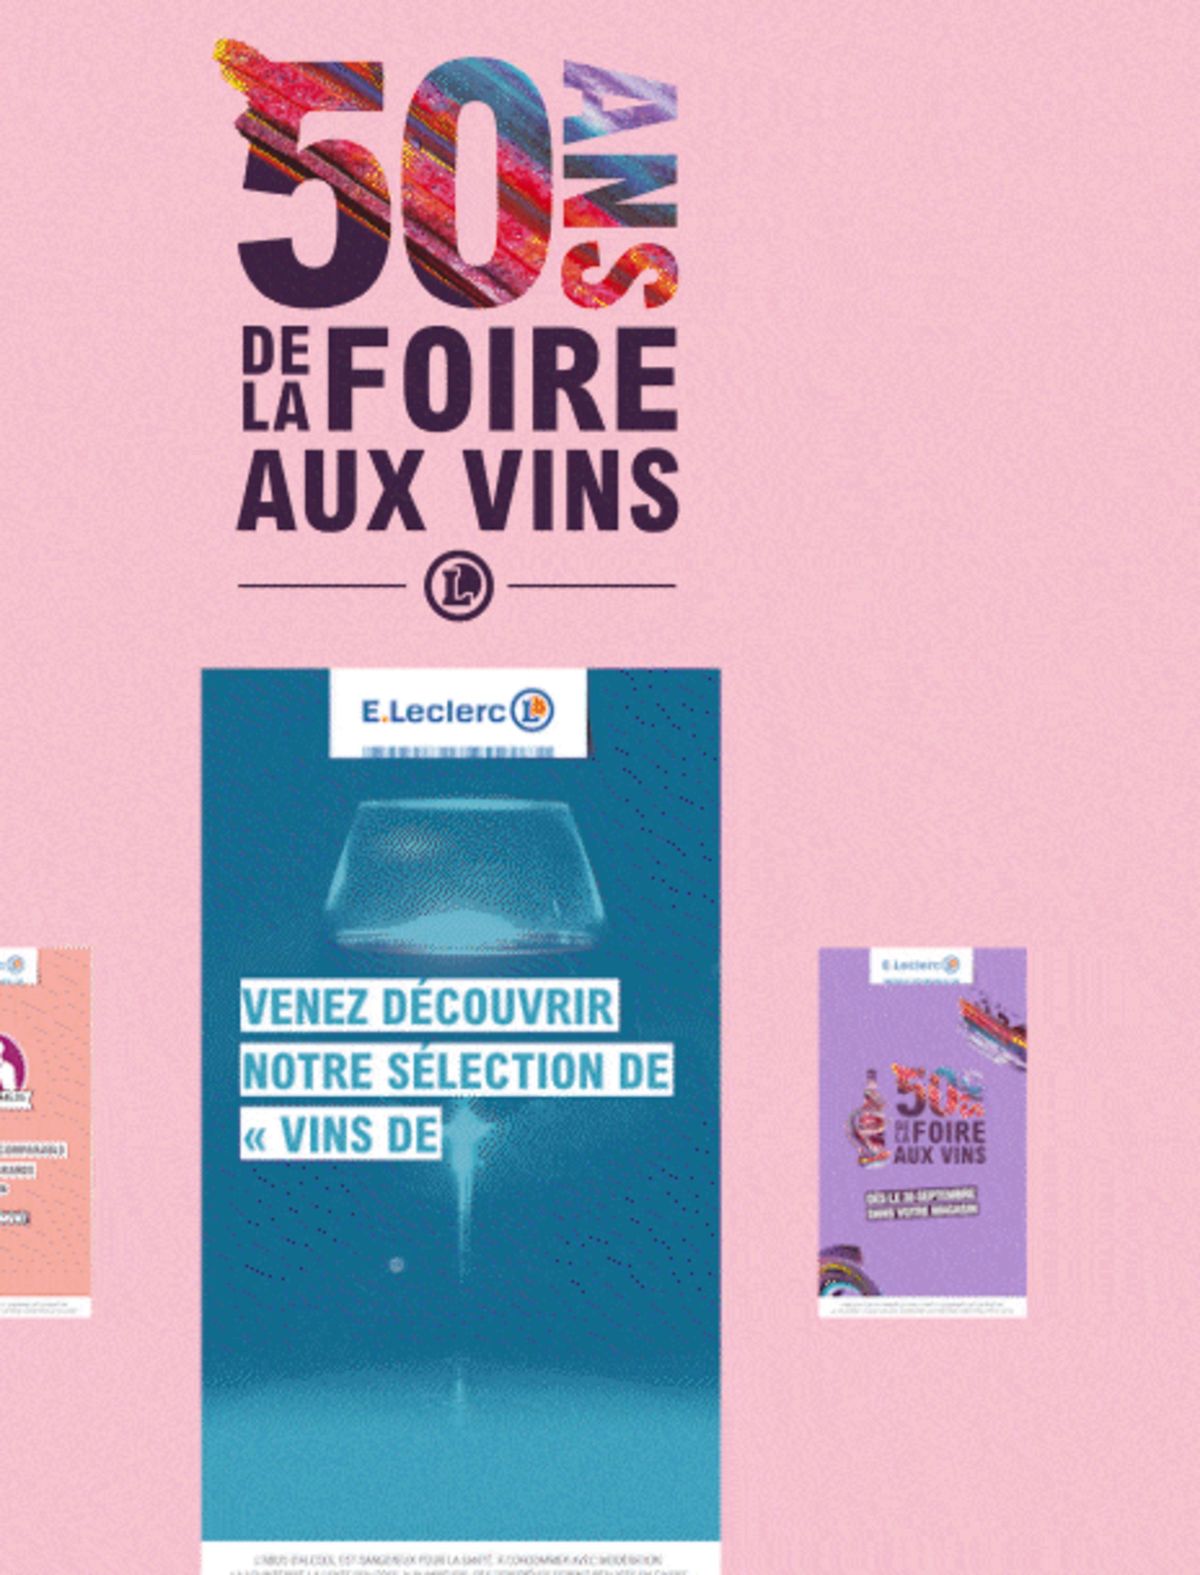 Catalogue Foire Aux Vins - Mixte, page 01397